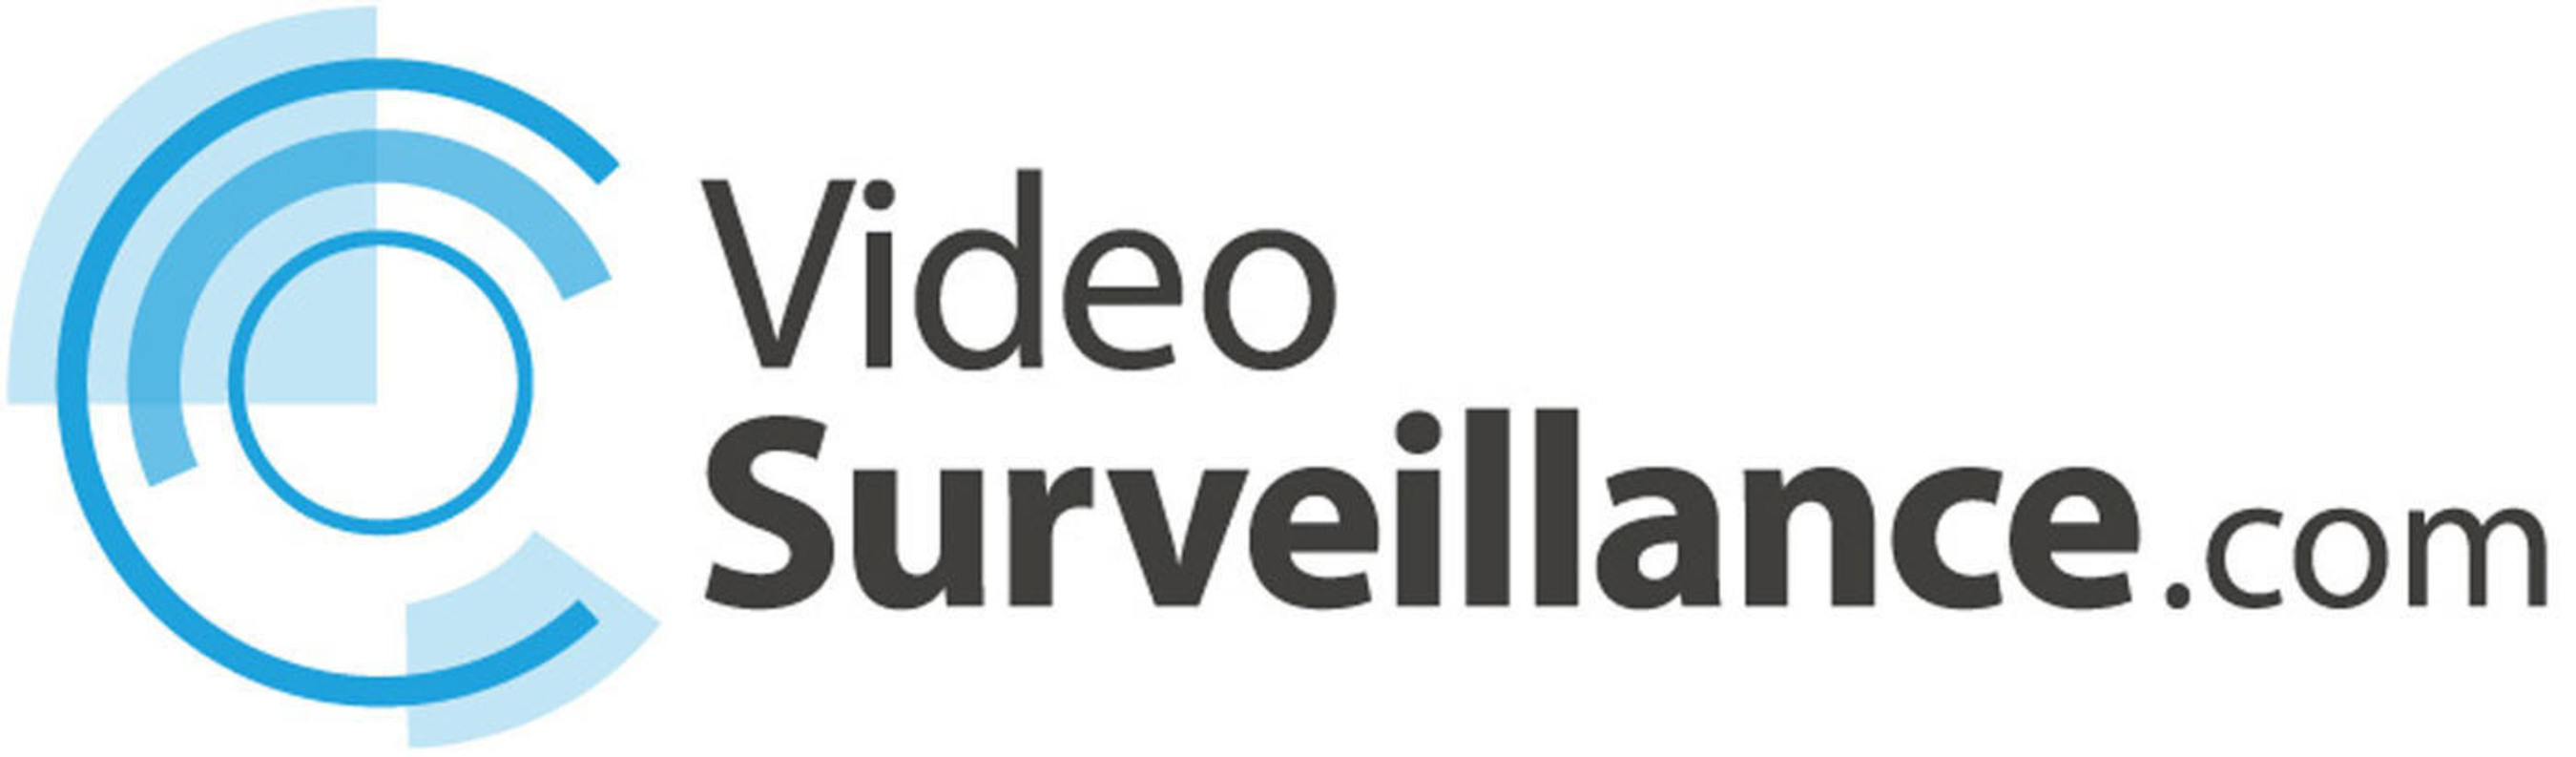 VideoSurveillance.com Expands Its Popular CommunityCam Initiative. (PRNewsFoto/VideoSurveillance.com) (PRNewsFoto/VIDEOSURVEILLANCE.COM)